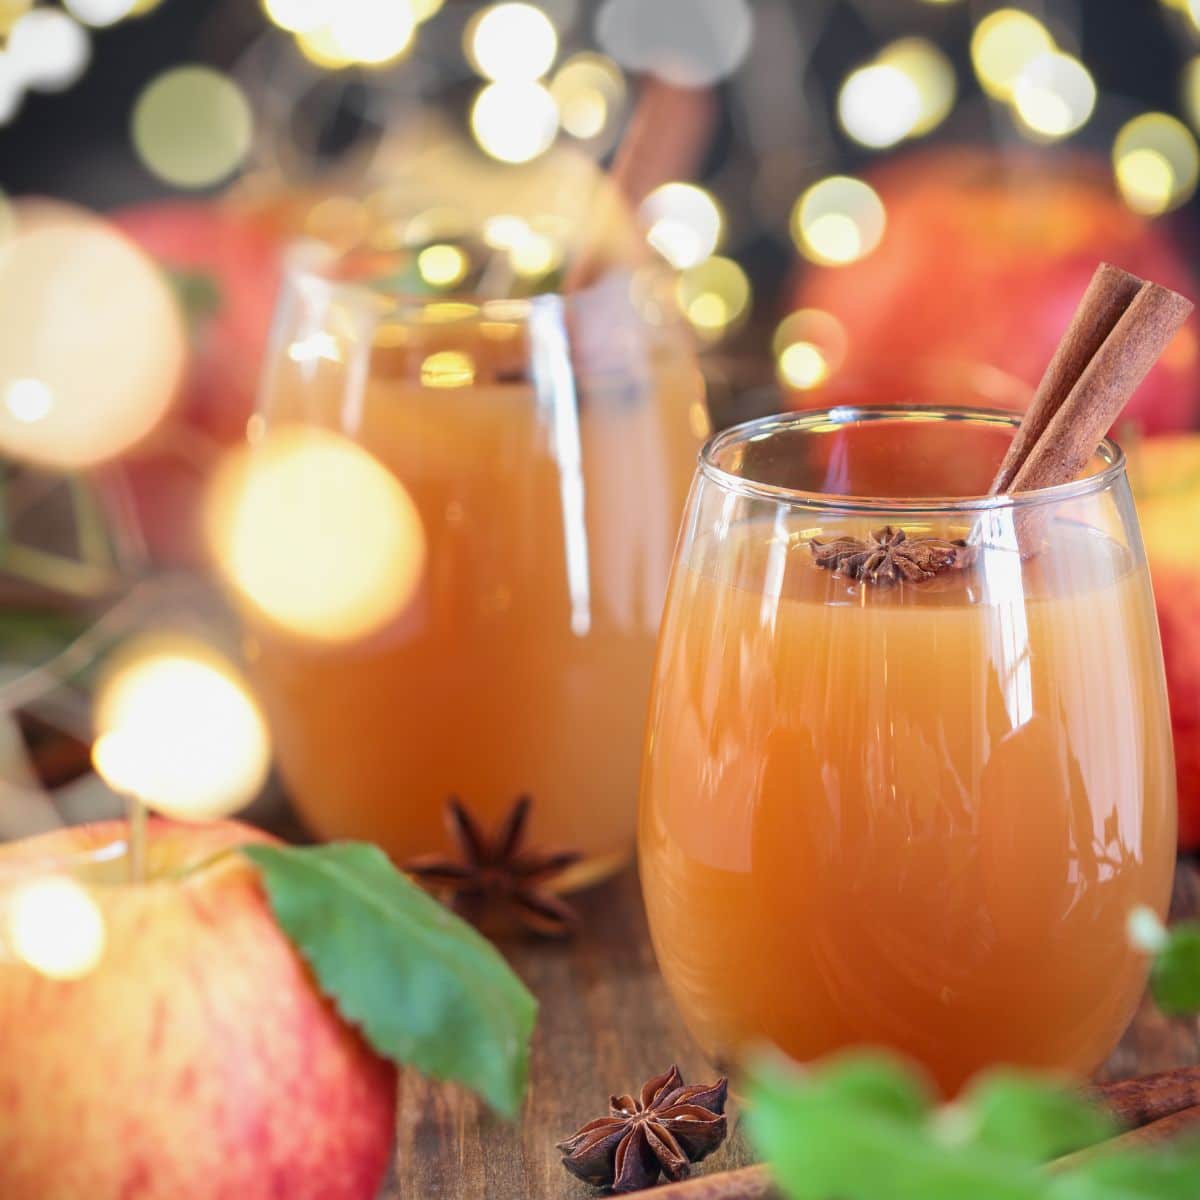 Idea pengganti cider epal terbaik dan alternatif untuk digunakan dalam mana-mana resipi dengan lampu perayaan di sebalik gelas cider epal.